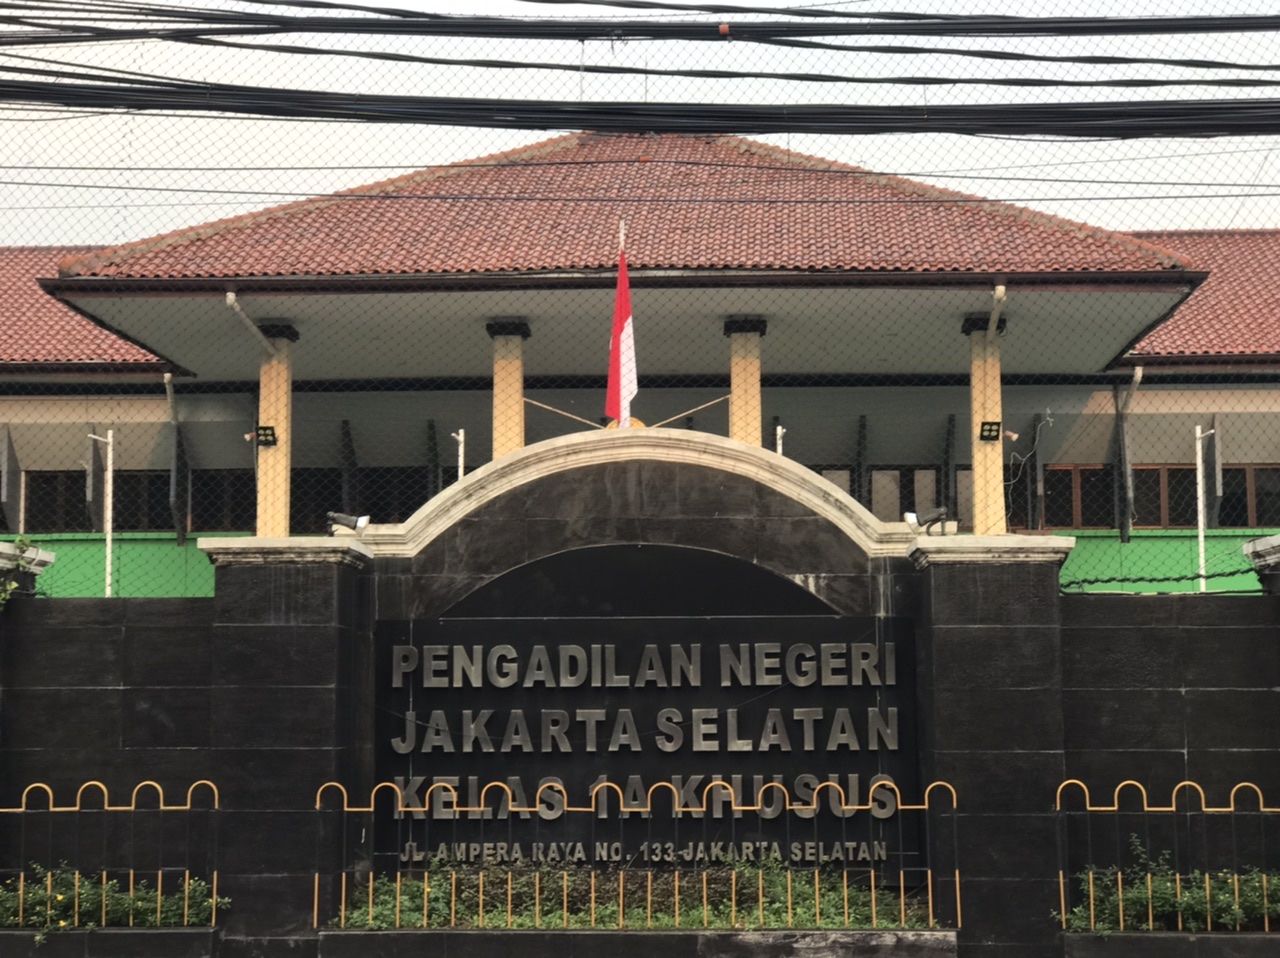 Cara ke Pengadilan Negeri Jakarta Selatan Naik Kereta dan Transjakarta